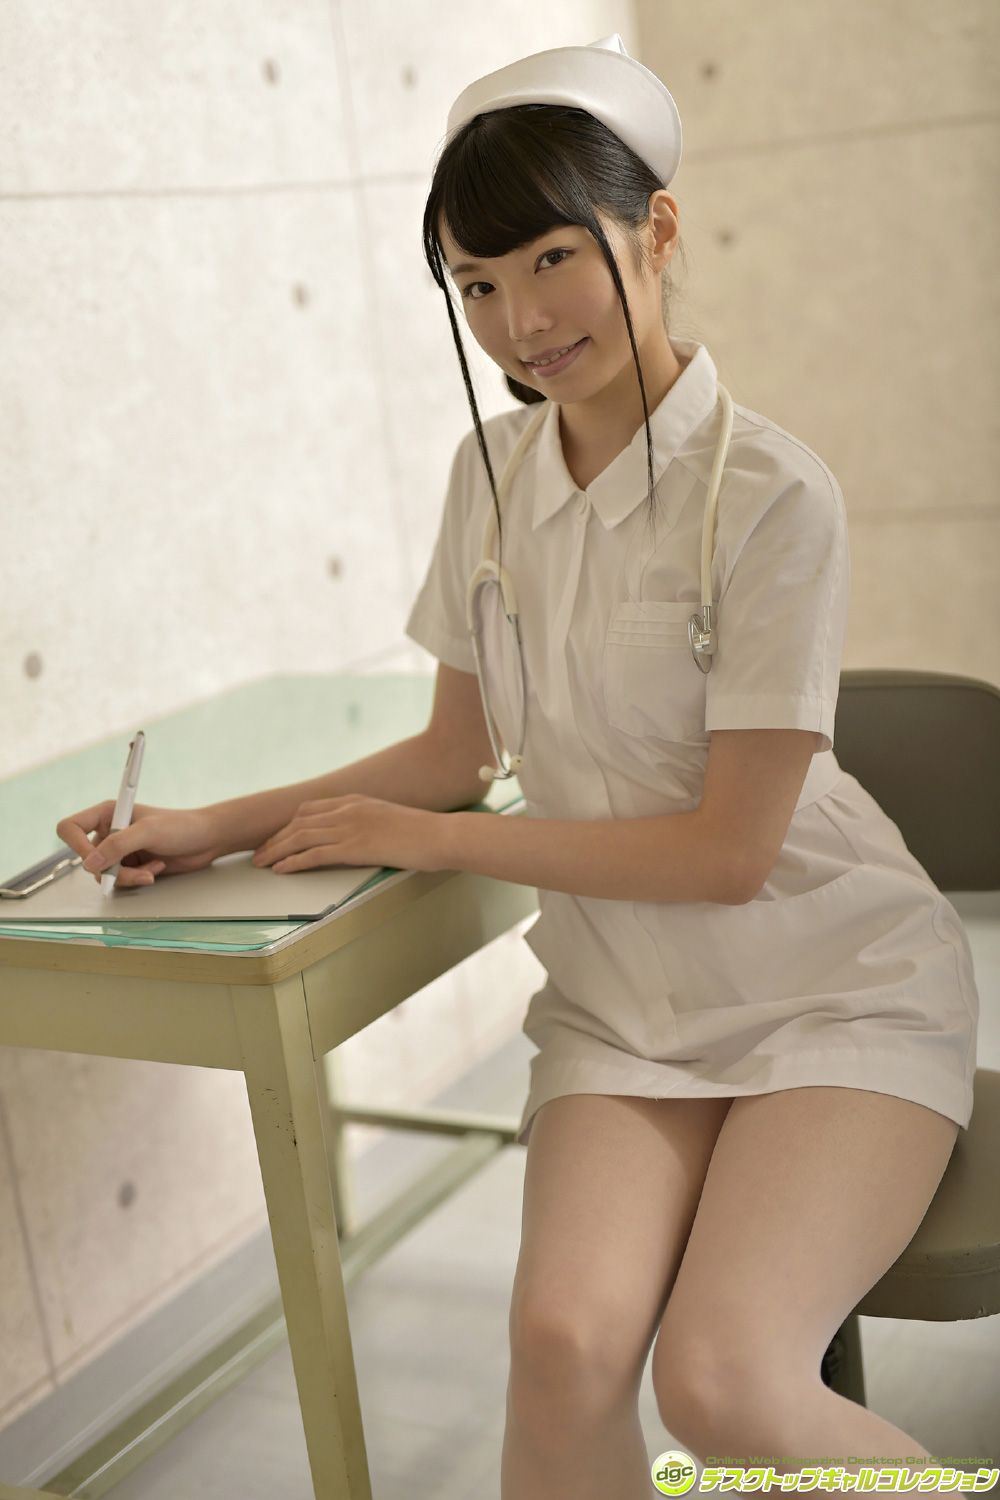 японская медсестра эротика фото 111